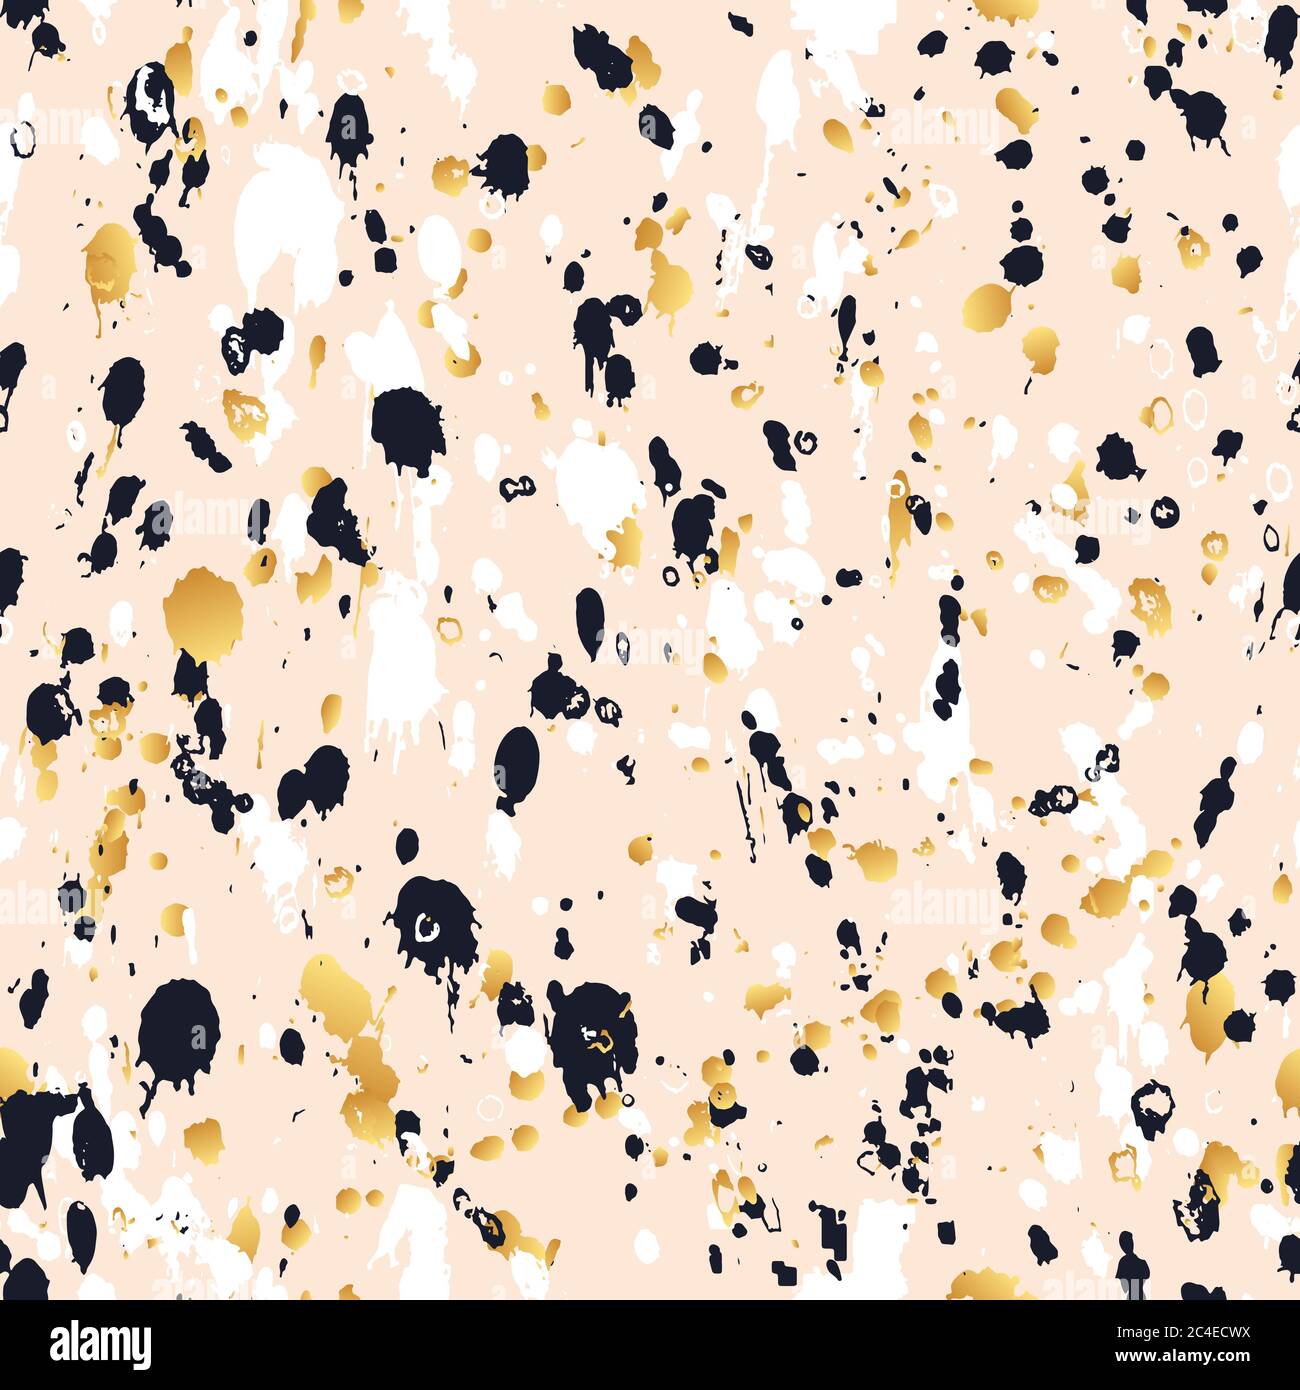 La vernice astratta ad acquerello spruzzi di campitura senza giunture vettoriali. Art inchiostro texture sfondo in colore rosa, oro, bianco nero. Tessuto disegnato a mano Illustrazione Vettoriale